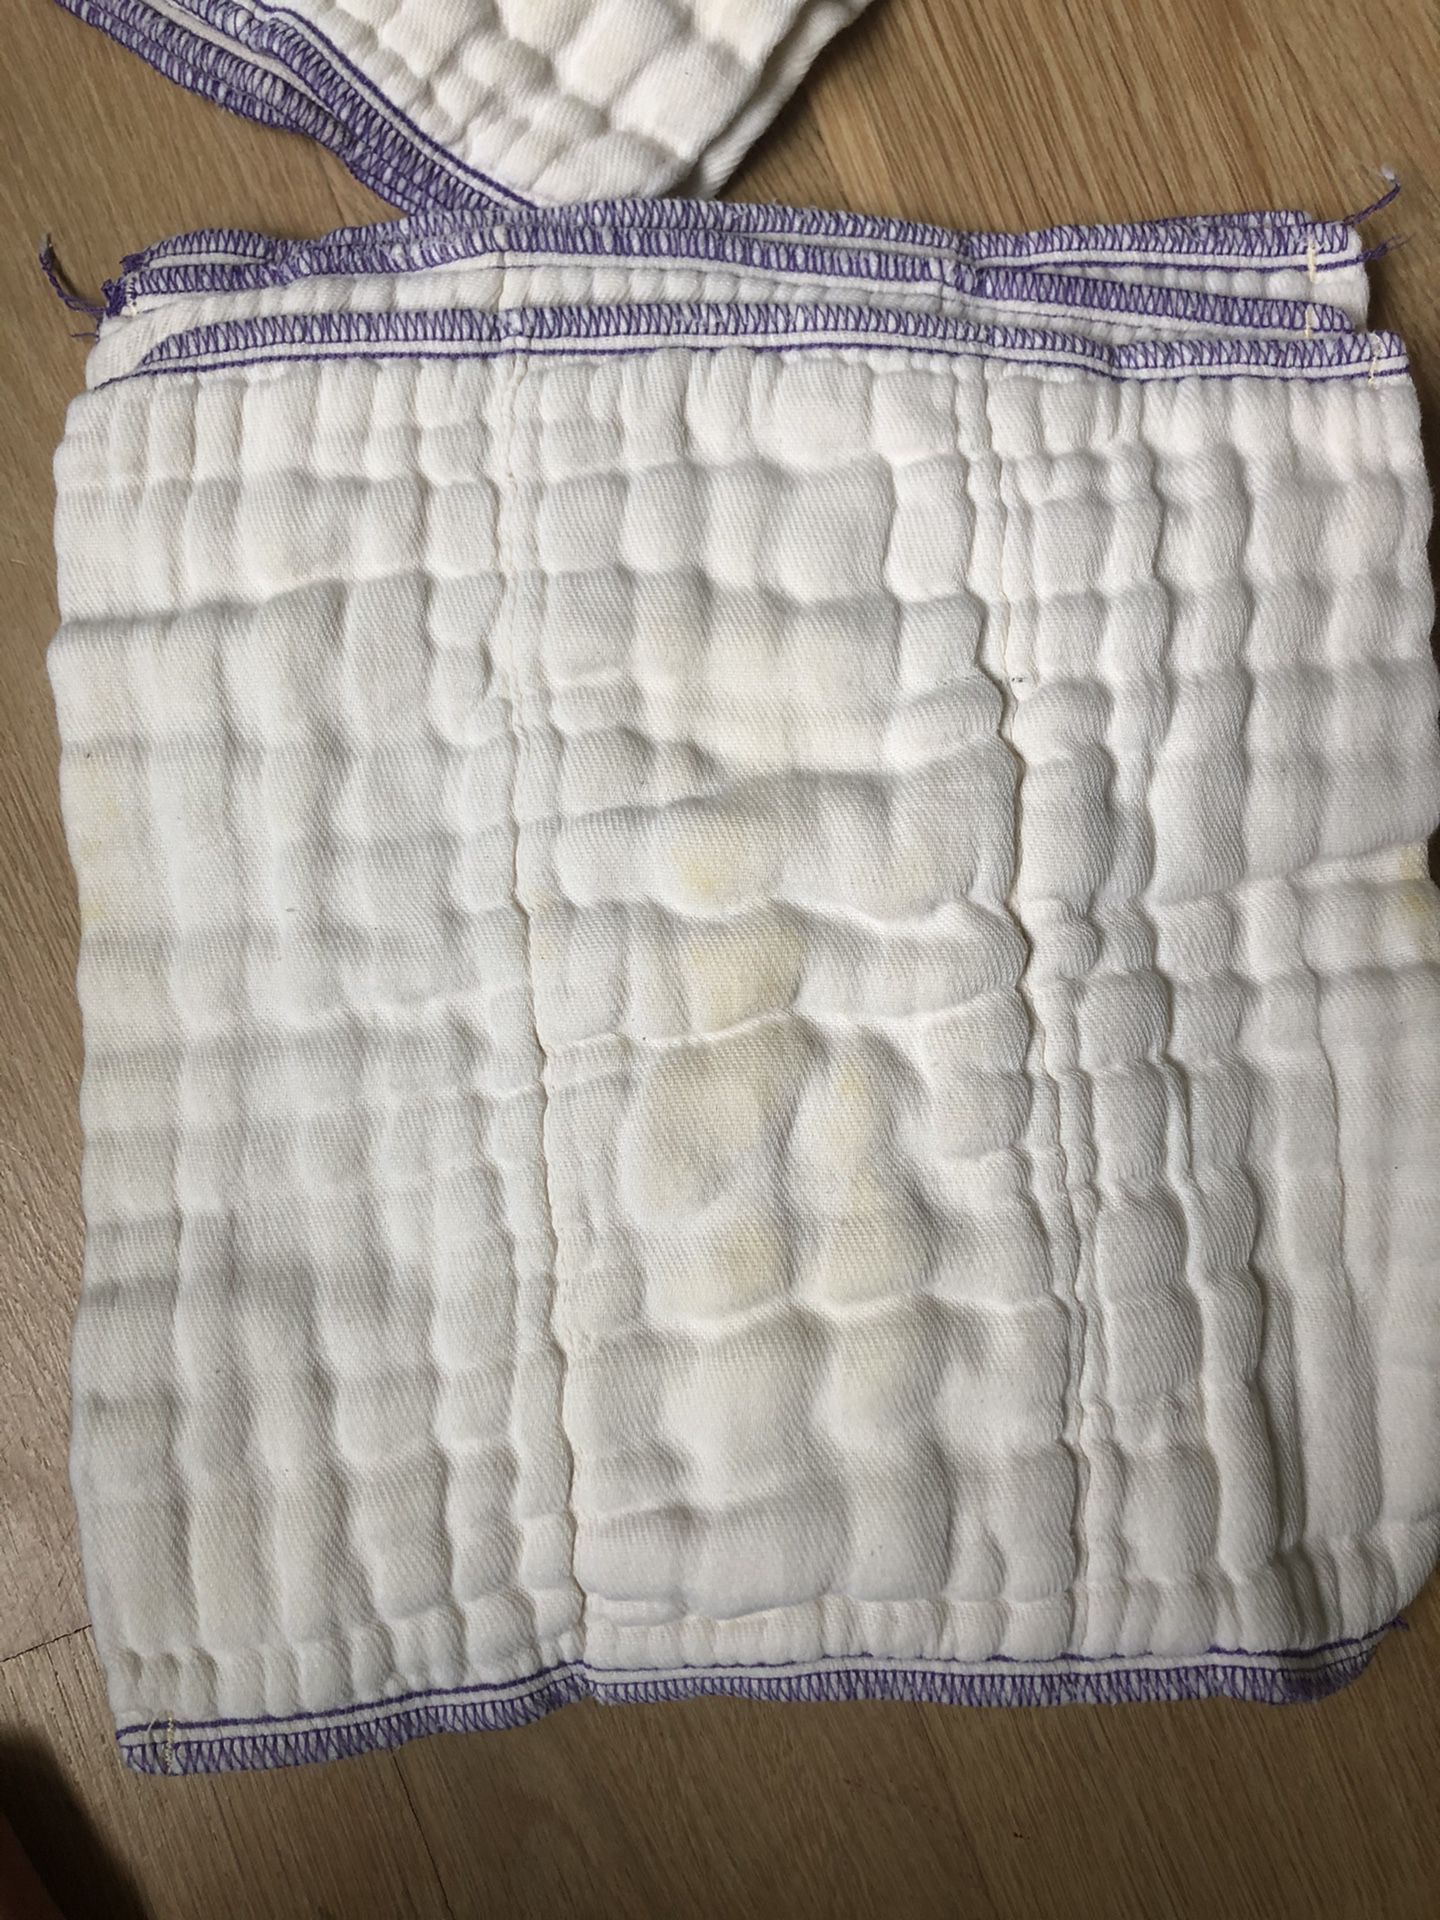 Cloth diapers newborn infant prefolds osocozy